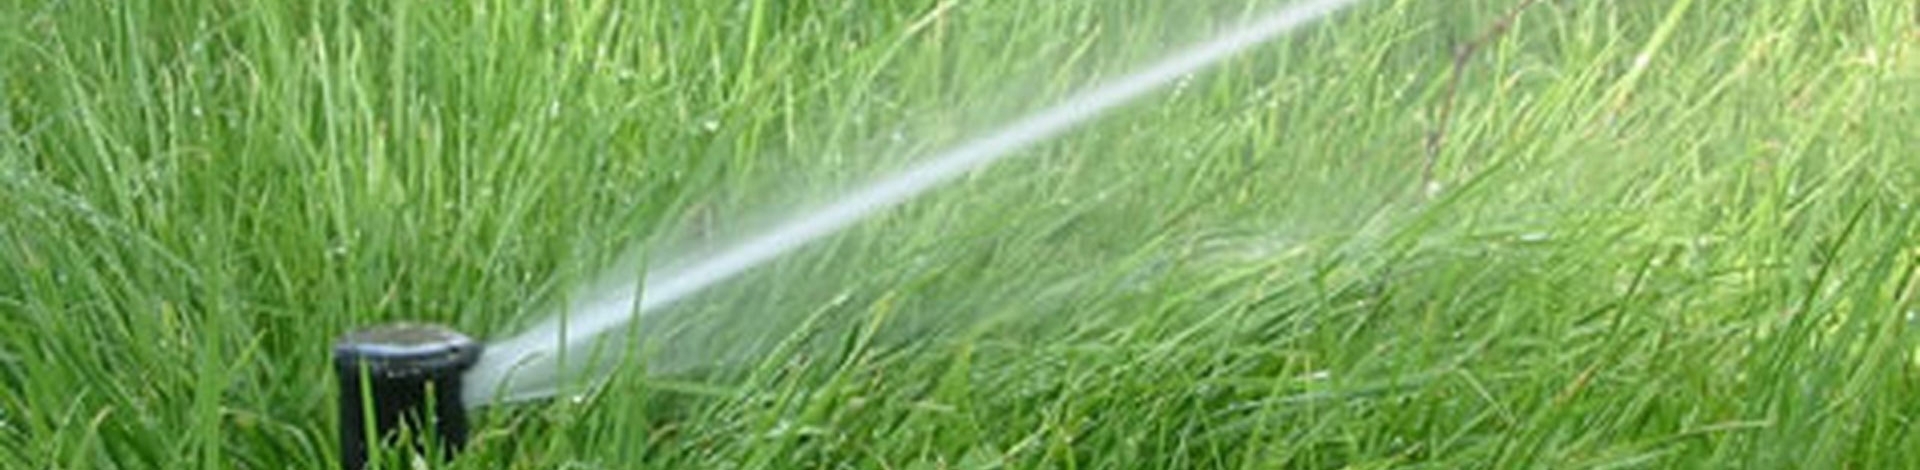 Impianti Irrigazione, Impianti Irrigazione Giardino, Progetti Impianti Irrigazione